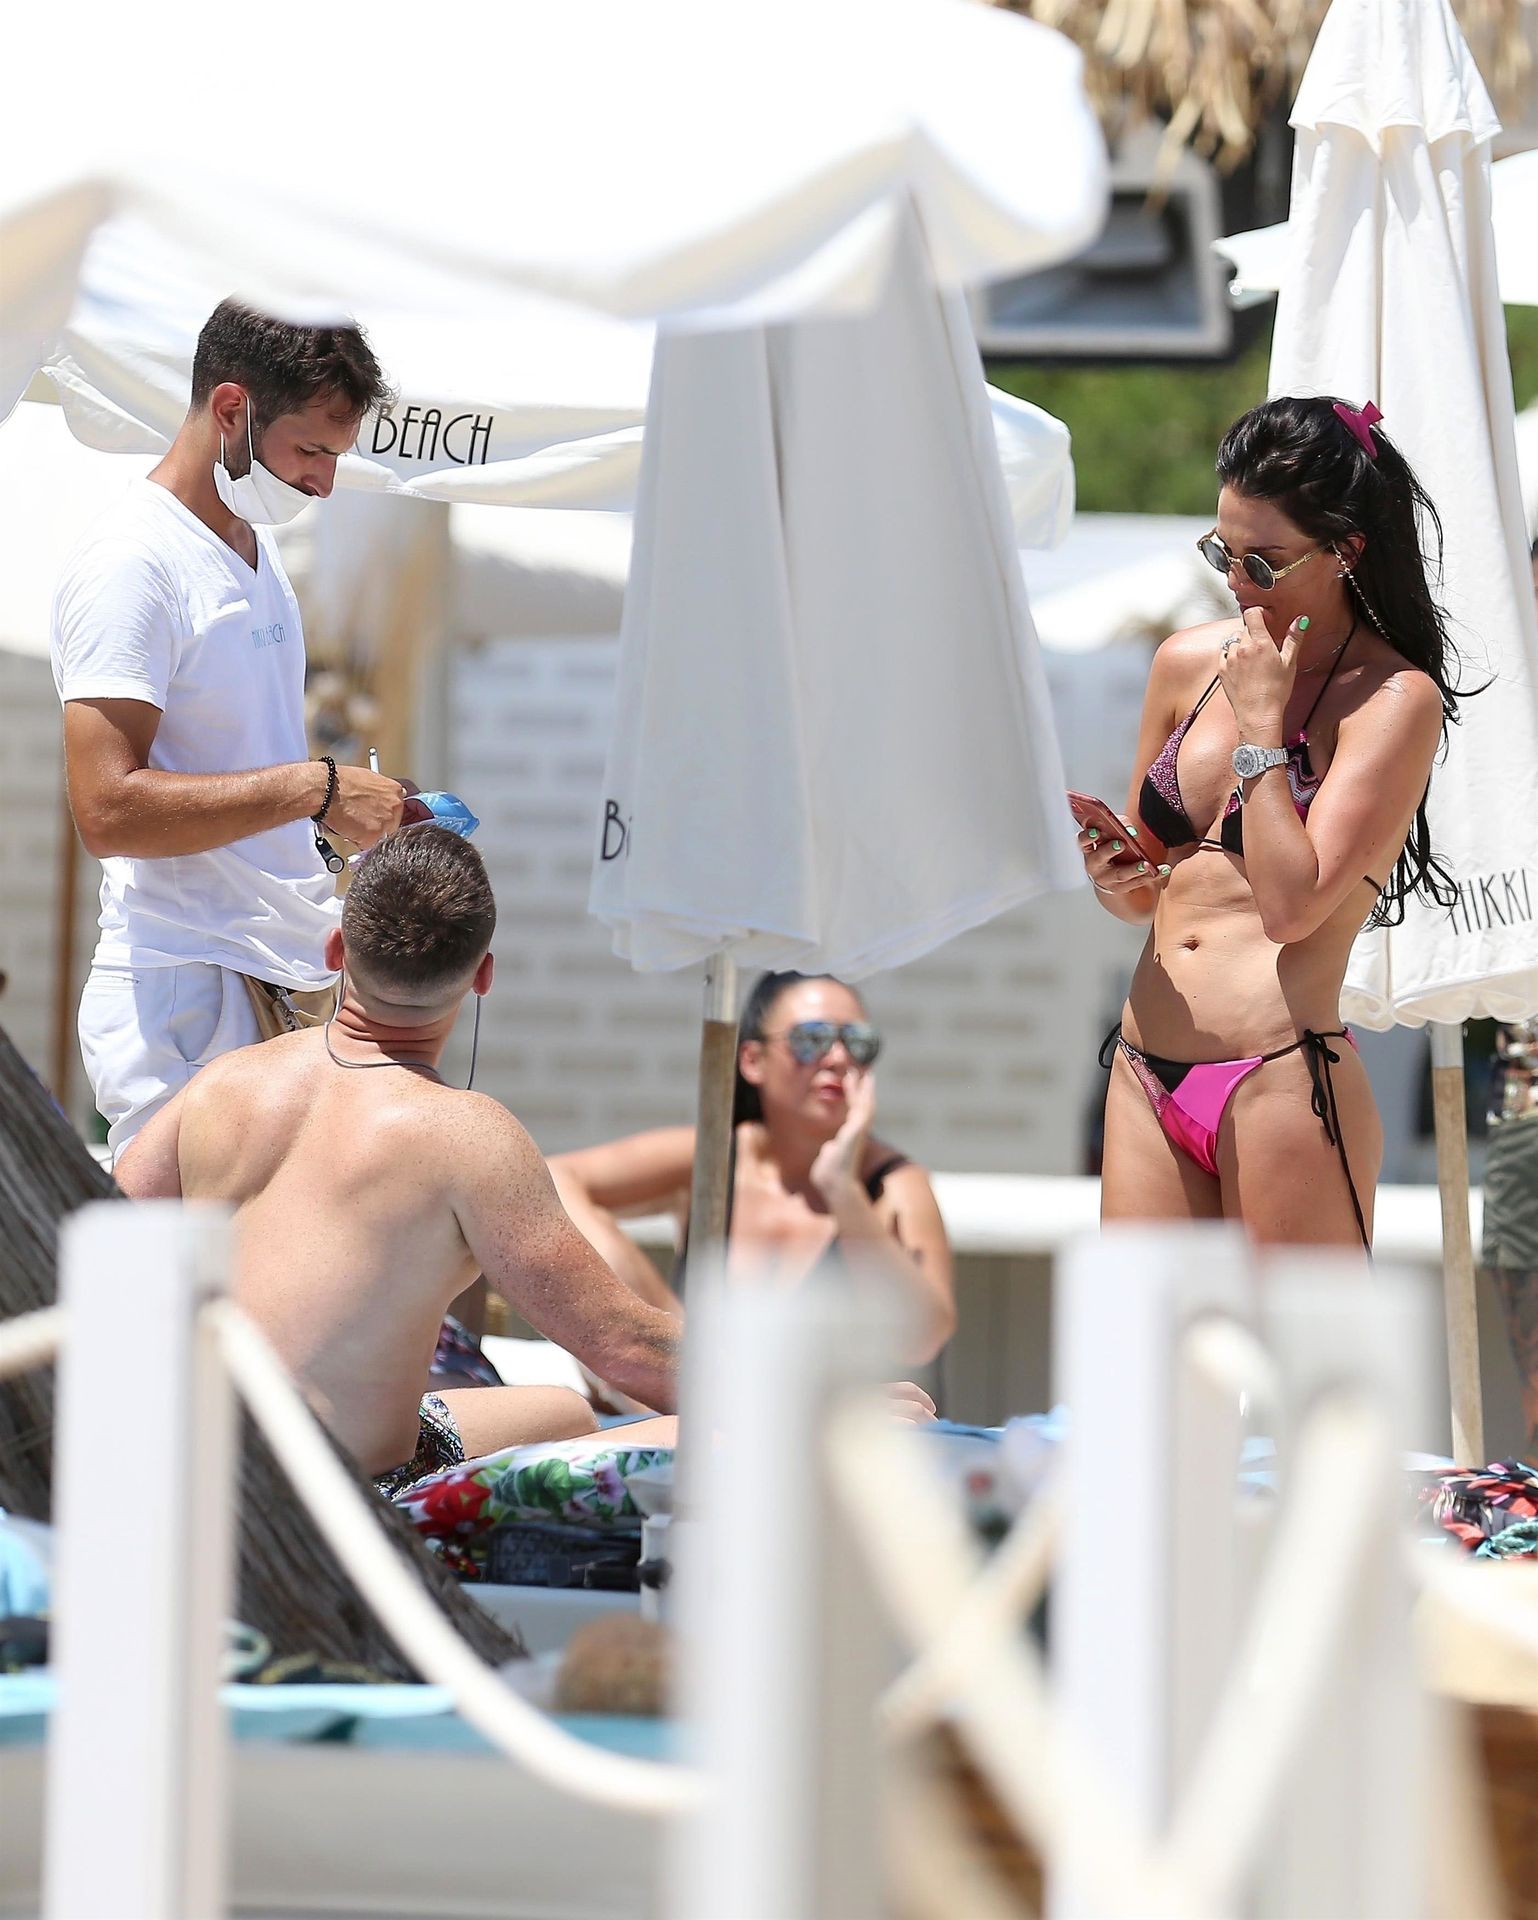 Danielle Lloyd  Michael O’Neill Enjoy Their Holidays in Ibiza (38 Photos)